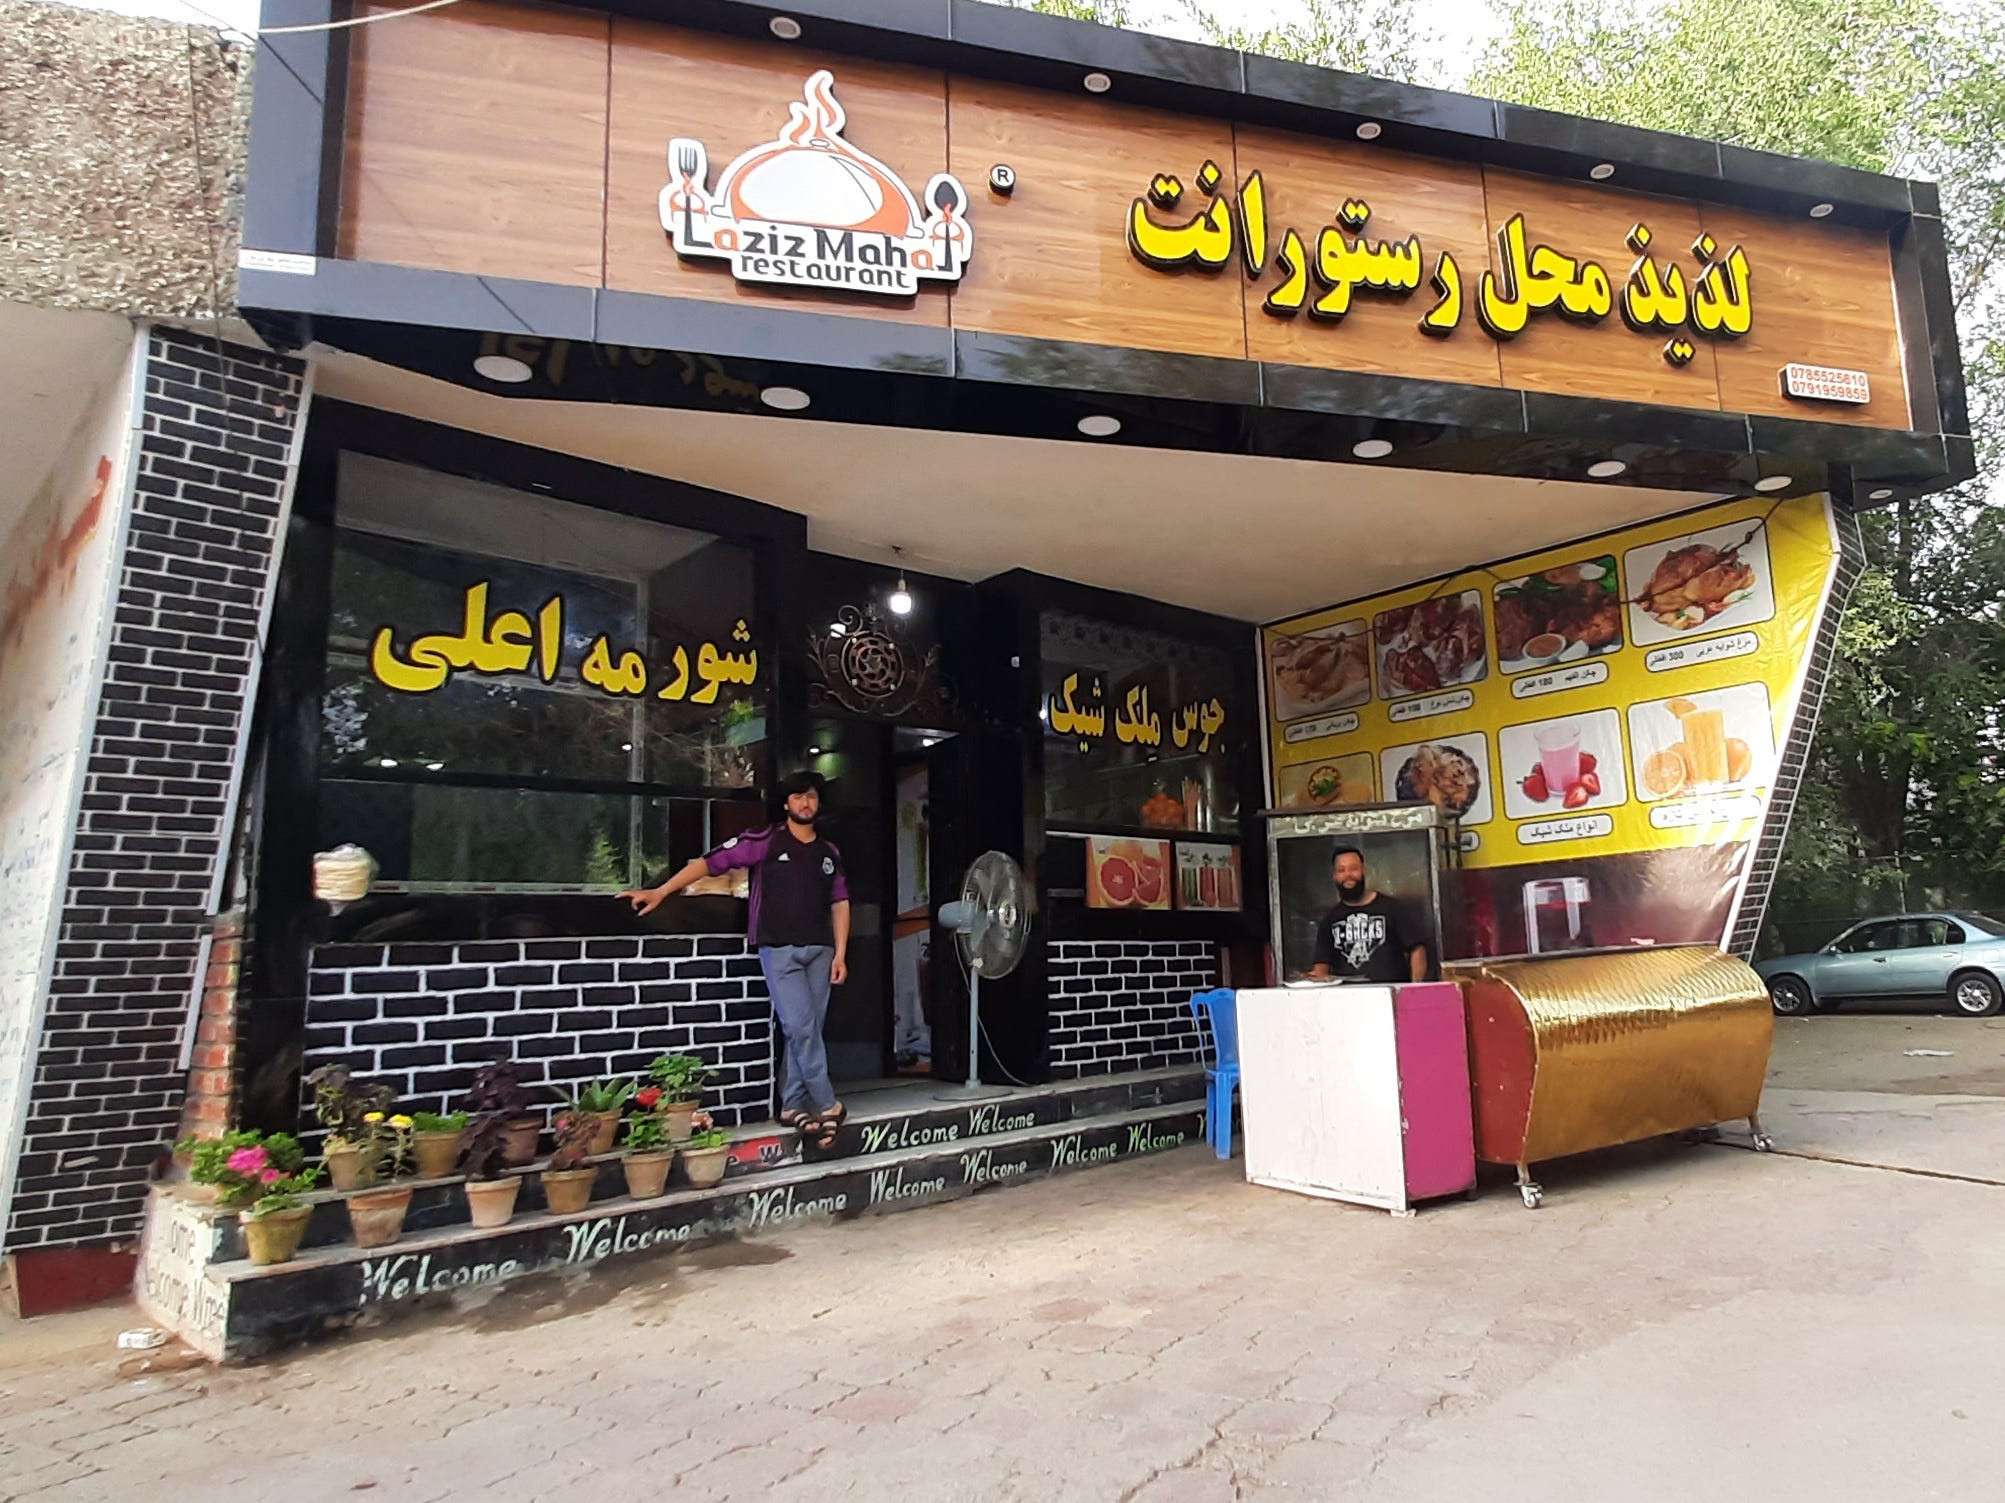 Kabul restaurant